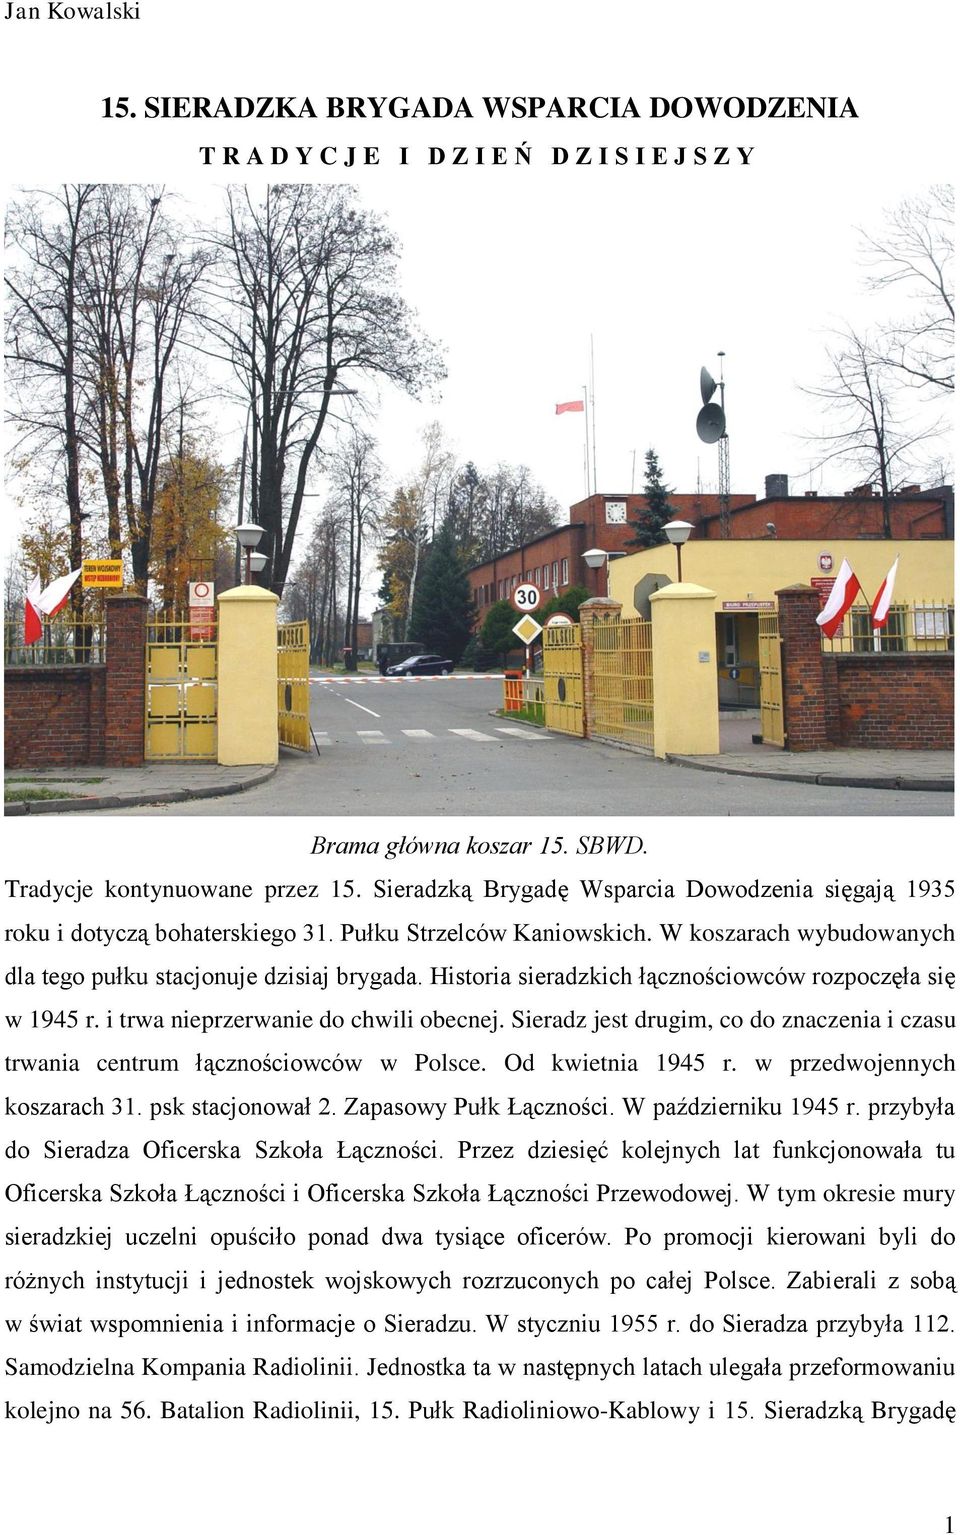 Historia sieradzkich łącznościowców rozpoczęła się w 1945 r. i trwa nieprzerwanie do chwili obecnej. Sieradz jest drugim, co do znaczenia i czasu trwania centrum łącznościowców w Polsce.